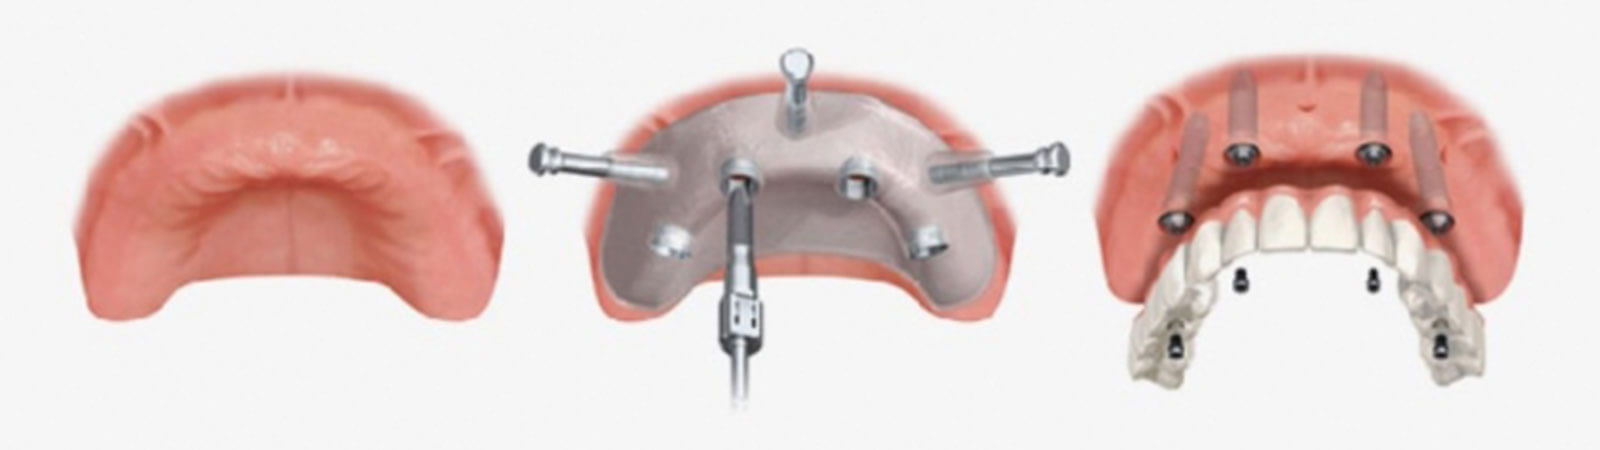 Implantologia Mini-invasiva | Studio Odontoiatrico Dr. Colombo Bolla - Dr. Brivio